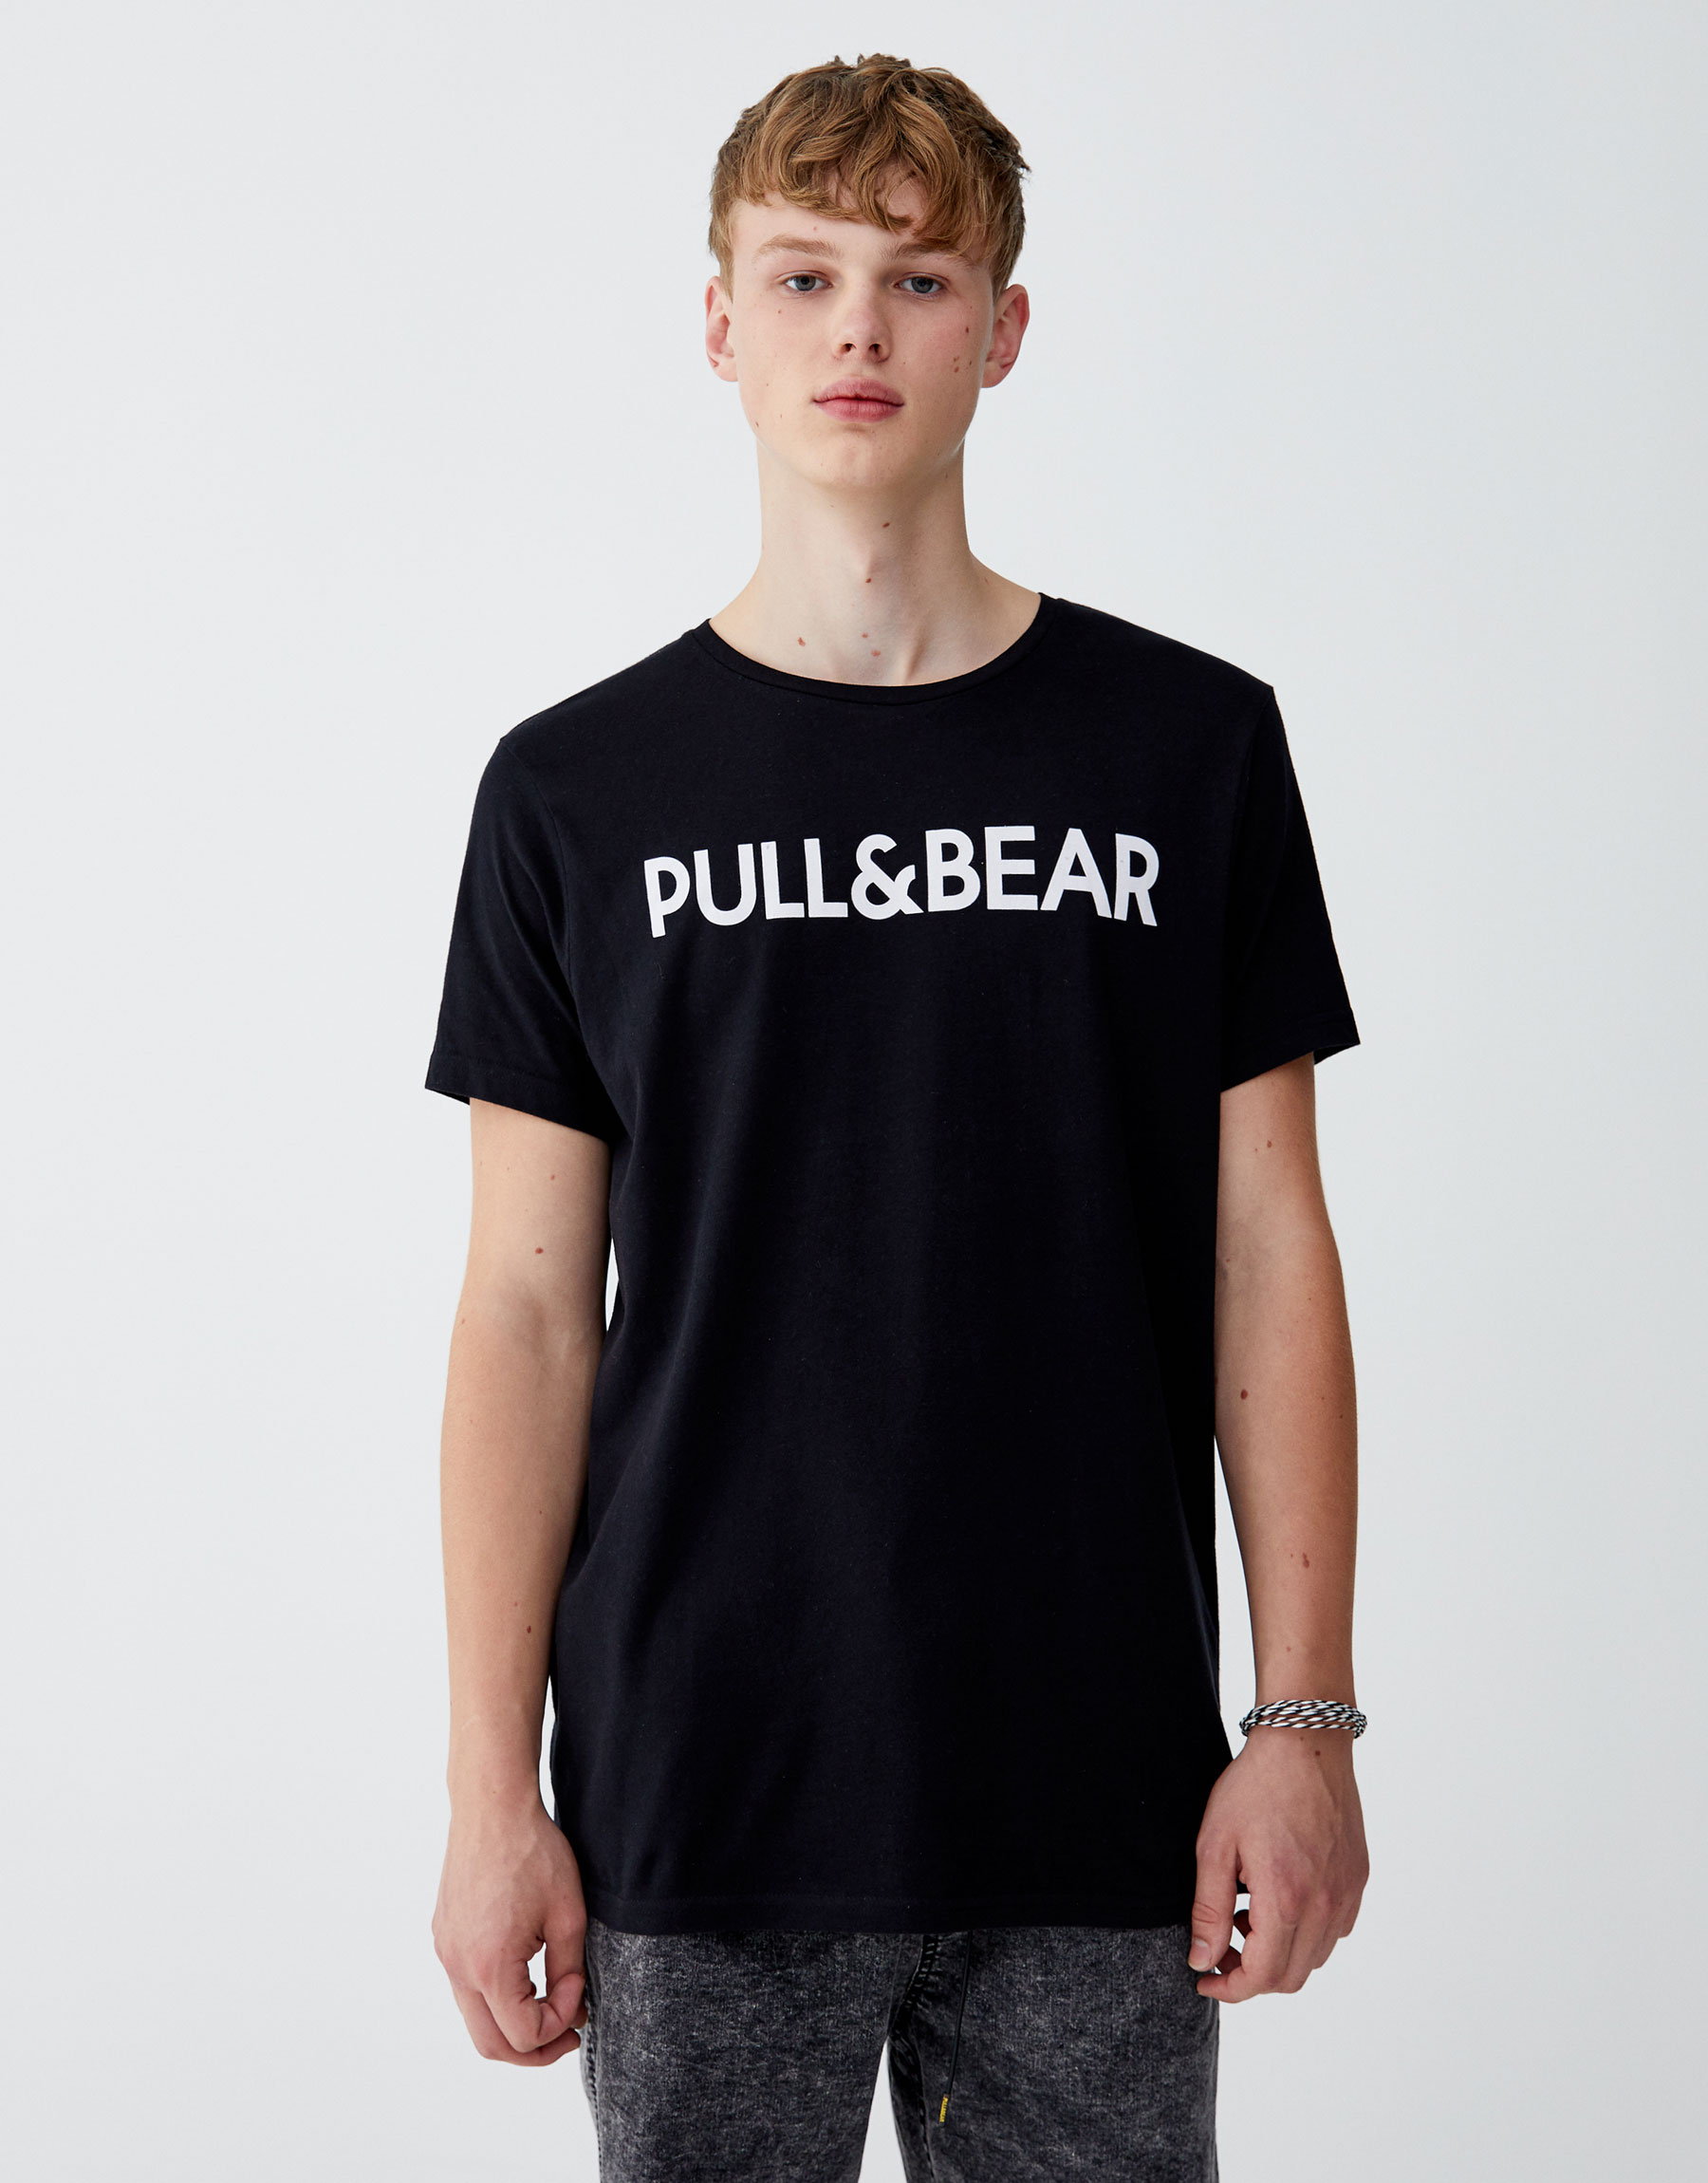 Pull and bear one utama